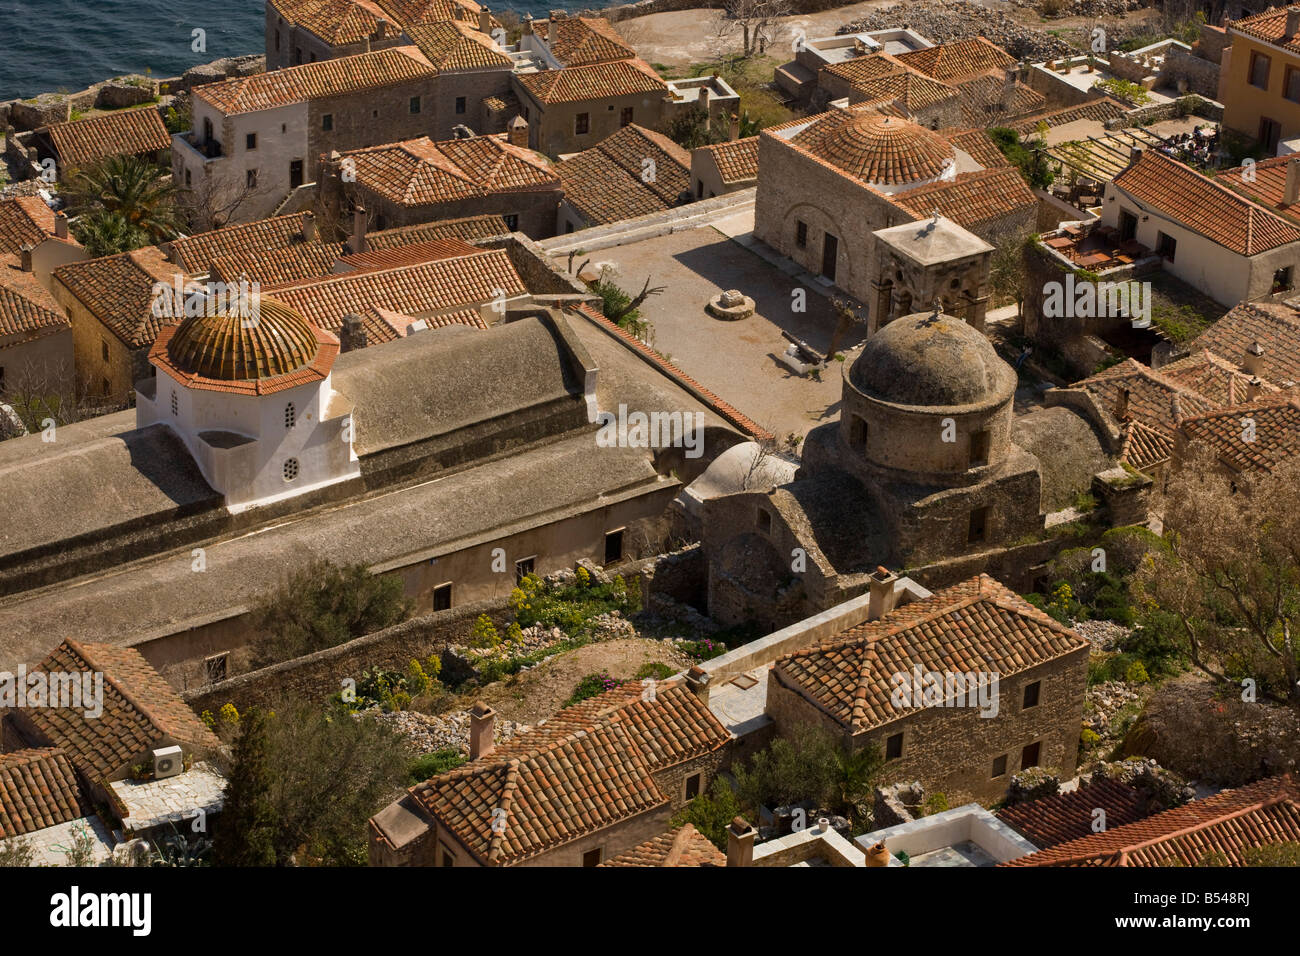 La amurallada ciudad costera de Monemvasia Peloponeso Grecia sur Foto de stock